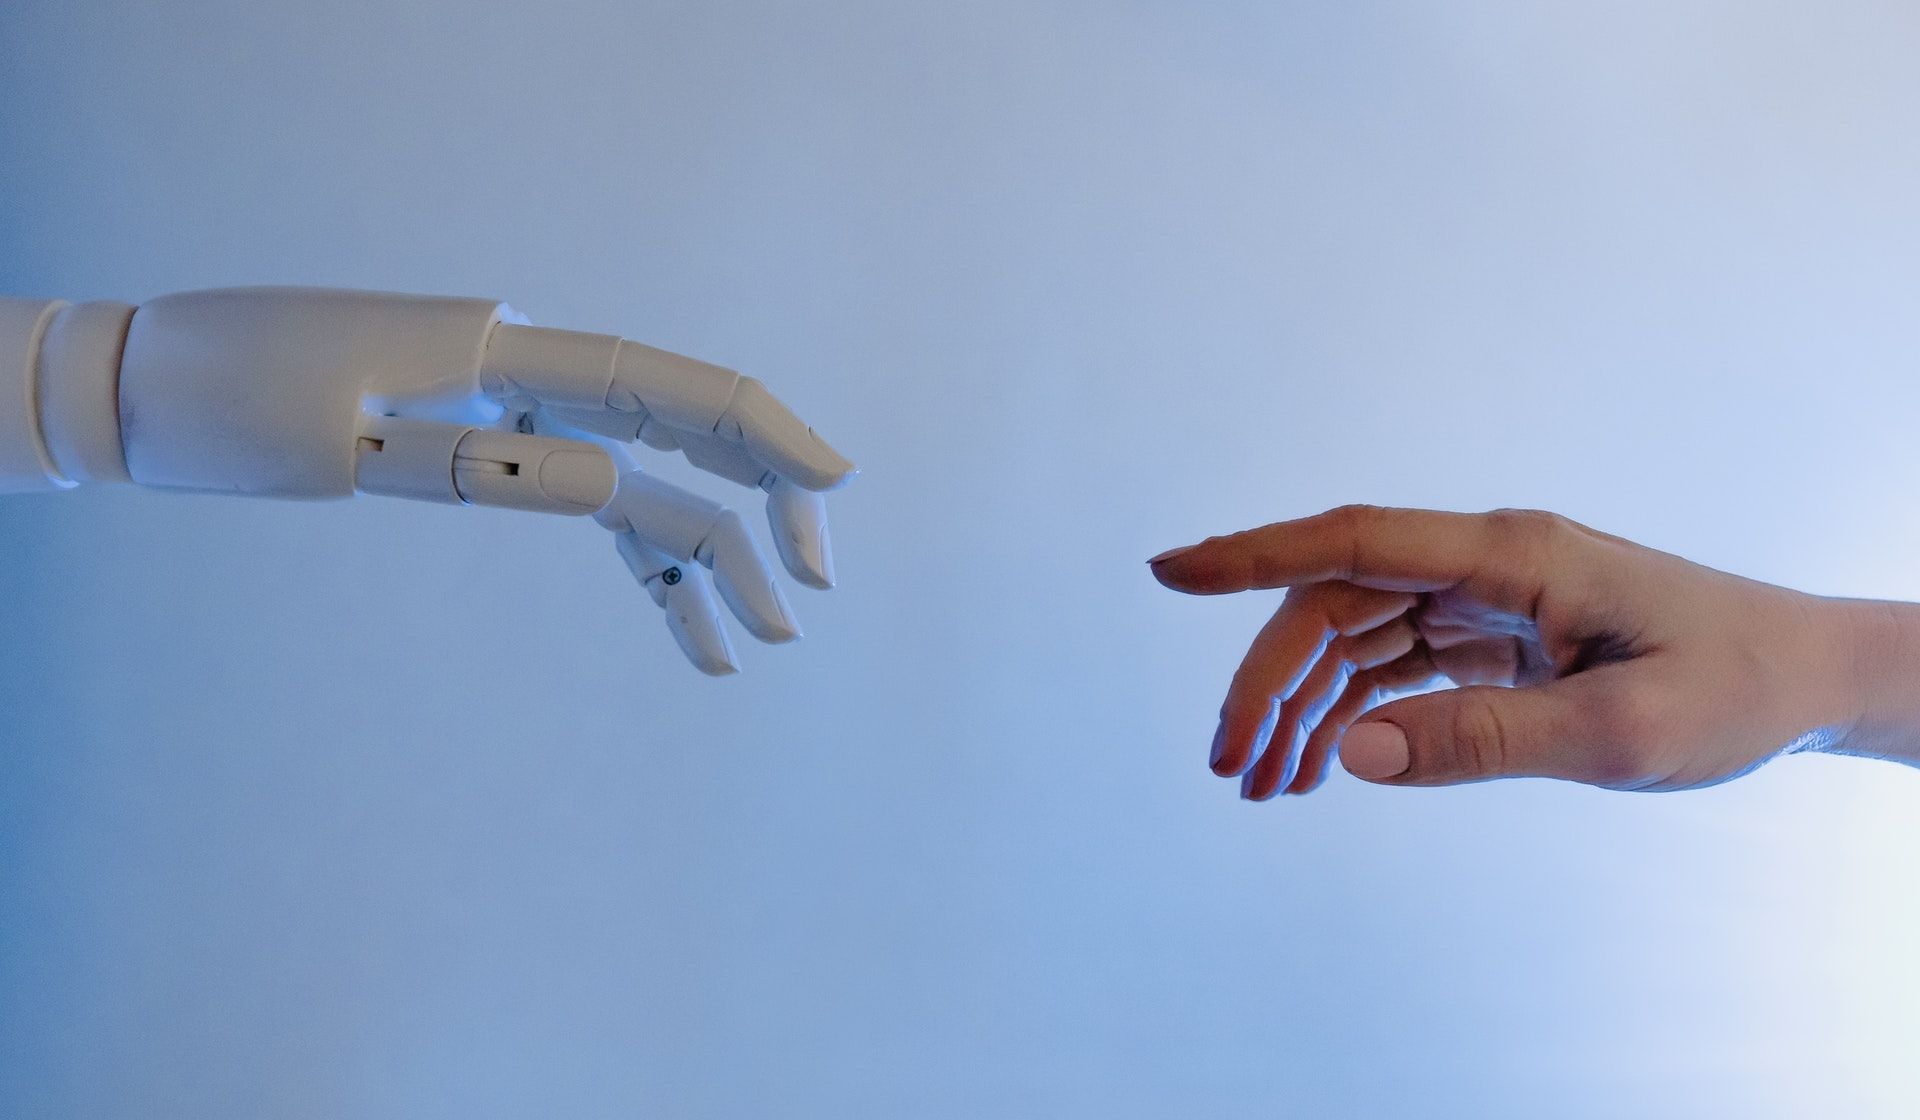 Zdjęcie ludzkie dłoni i dłoni robota, które niedługo się zetkną